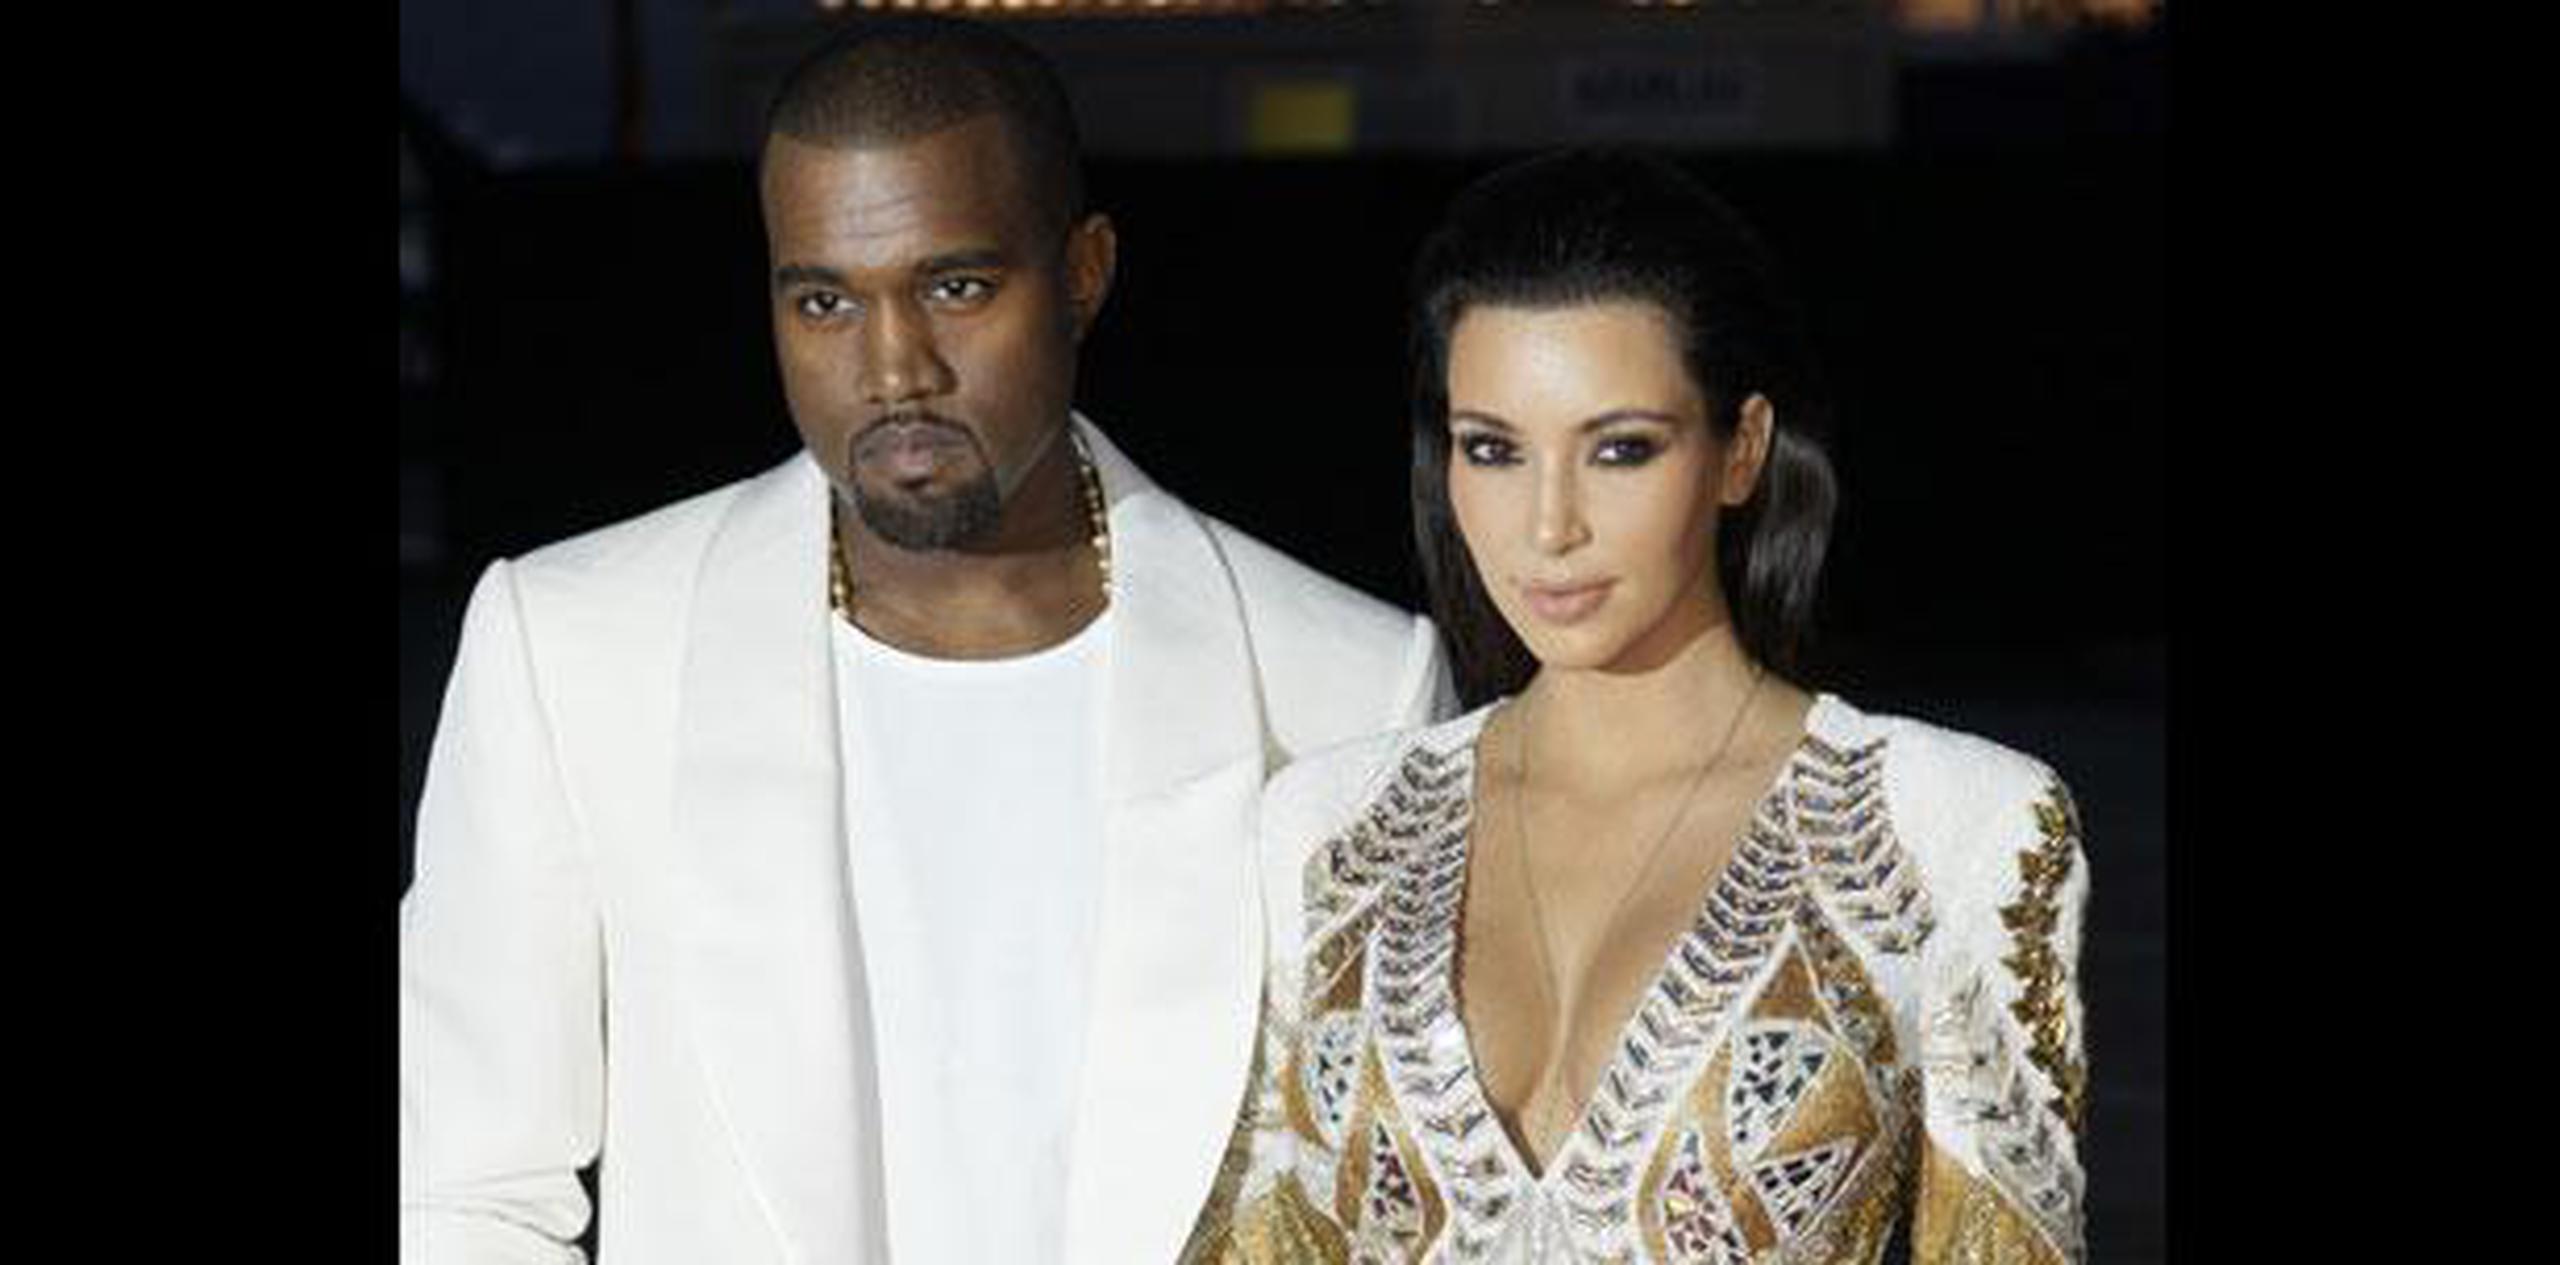 Kim Kardashian intervino en la polémica entre su esposo Kanye West y Taylor Swift. (Archivo)